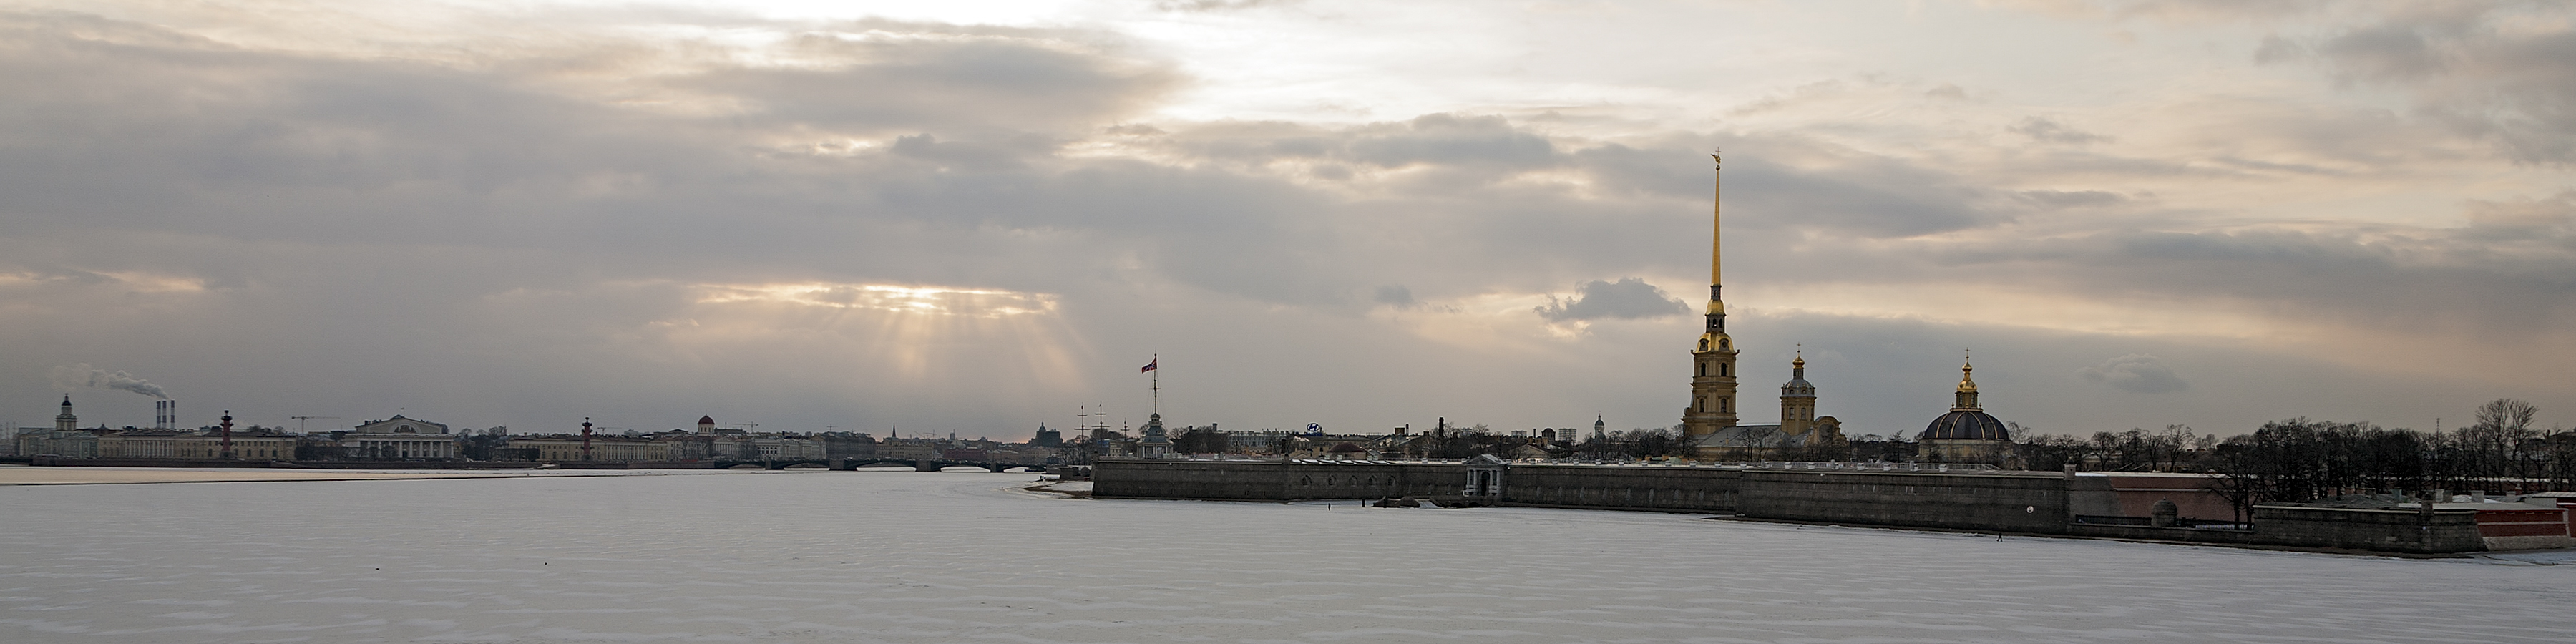 Peter-und-Paul-Festung in Sankt Petersburg